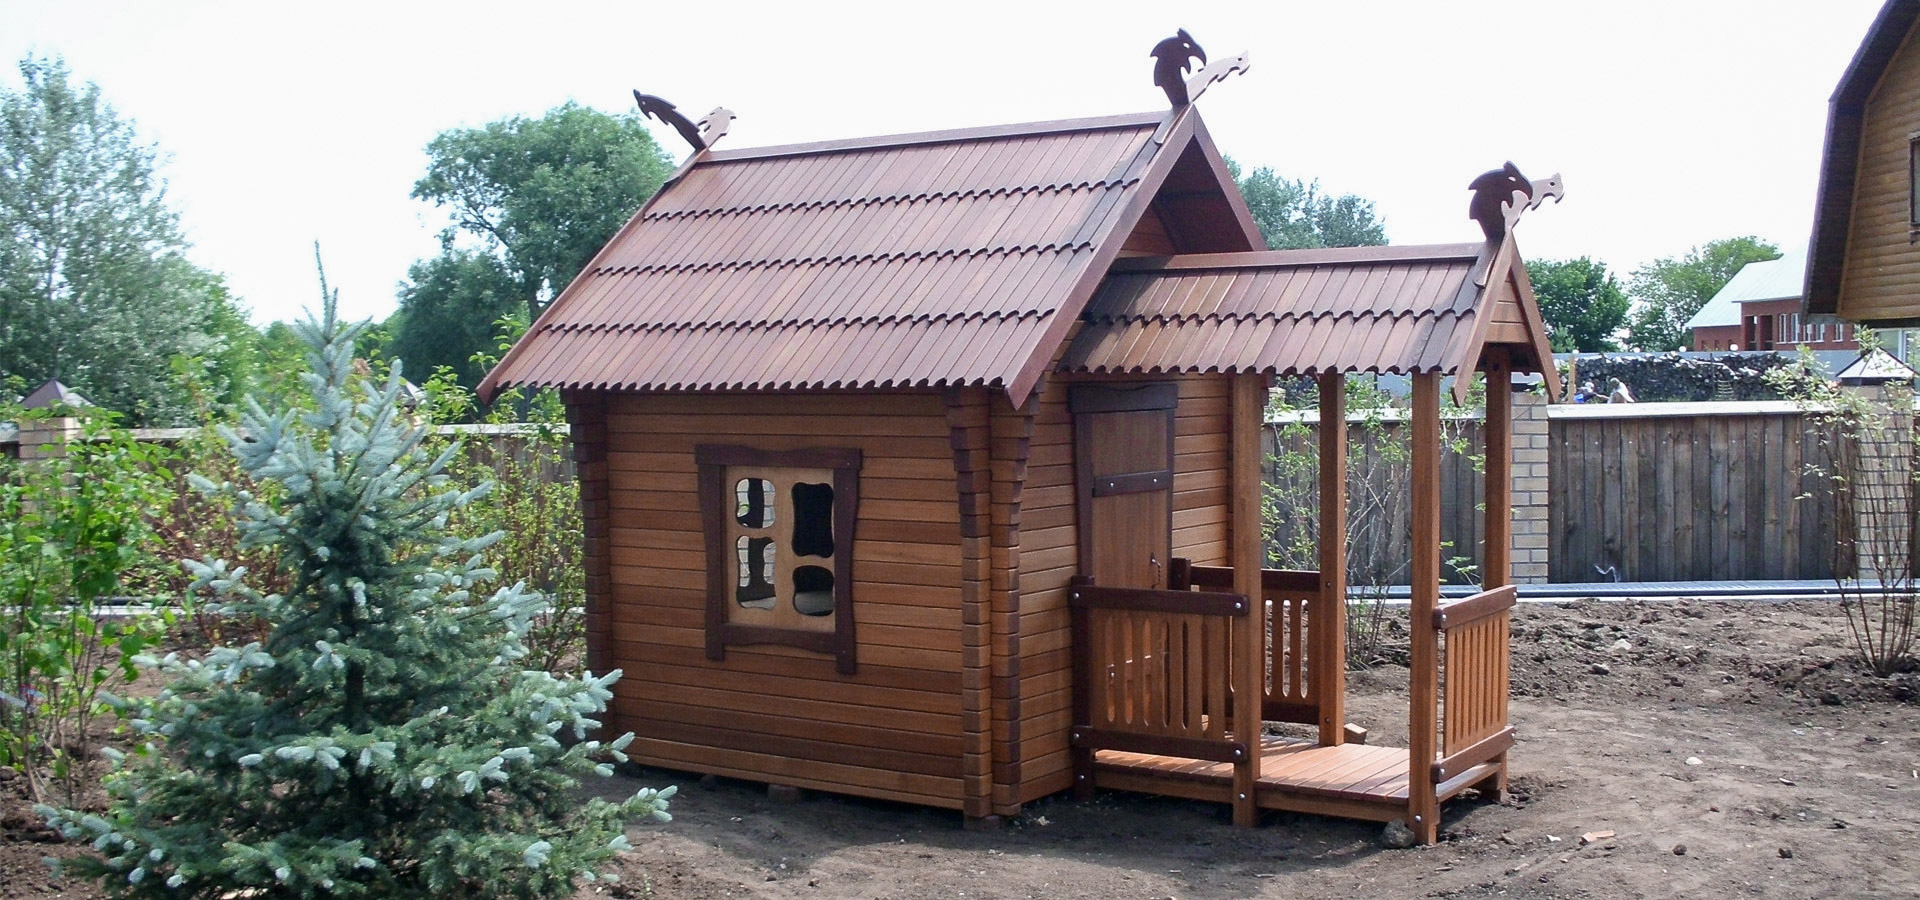 Домик для детей деревянный со сказочным дизайном от СвидЪ